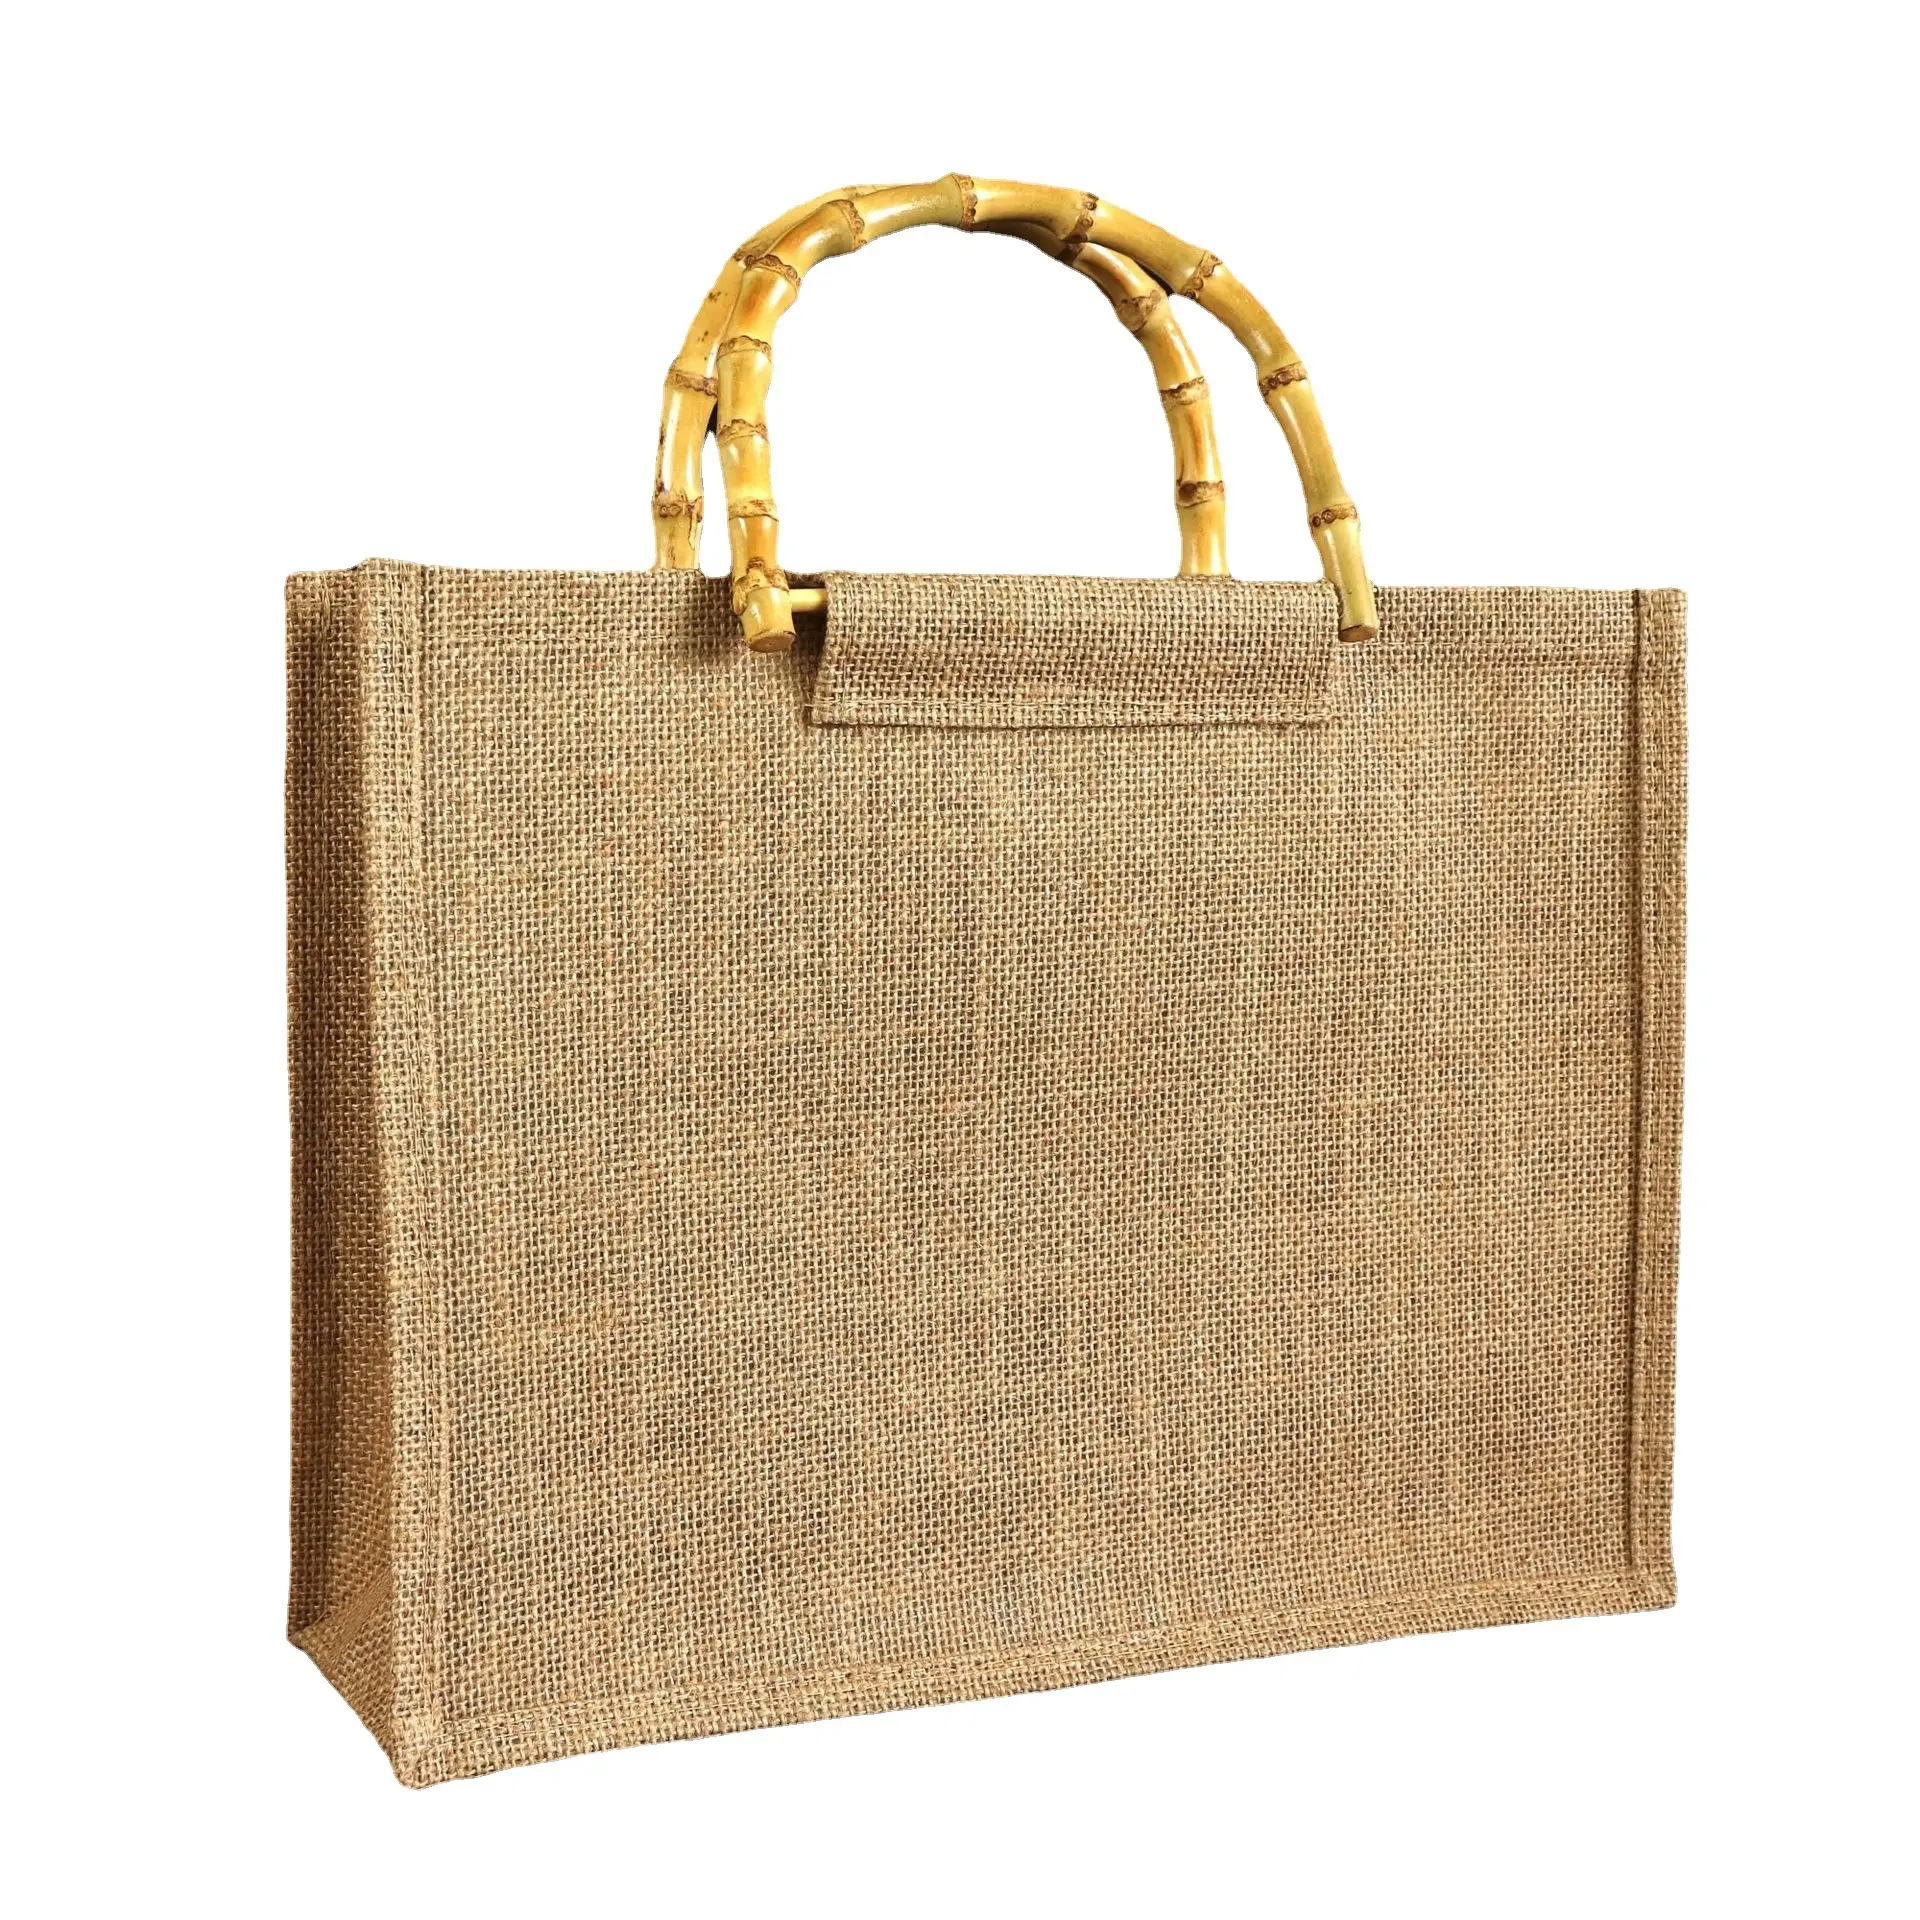 Logo personnalisé imprimé Eco réutilisable chanvre Shopping fourre-tout toile de jute sac avec poignée en bambou